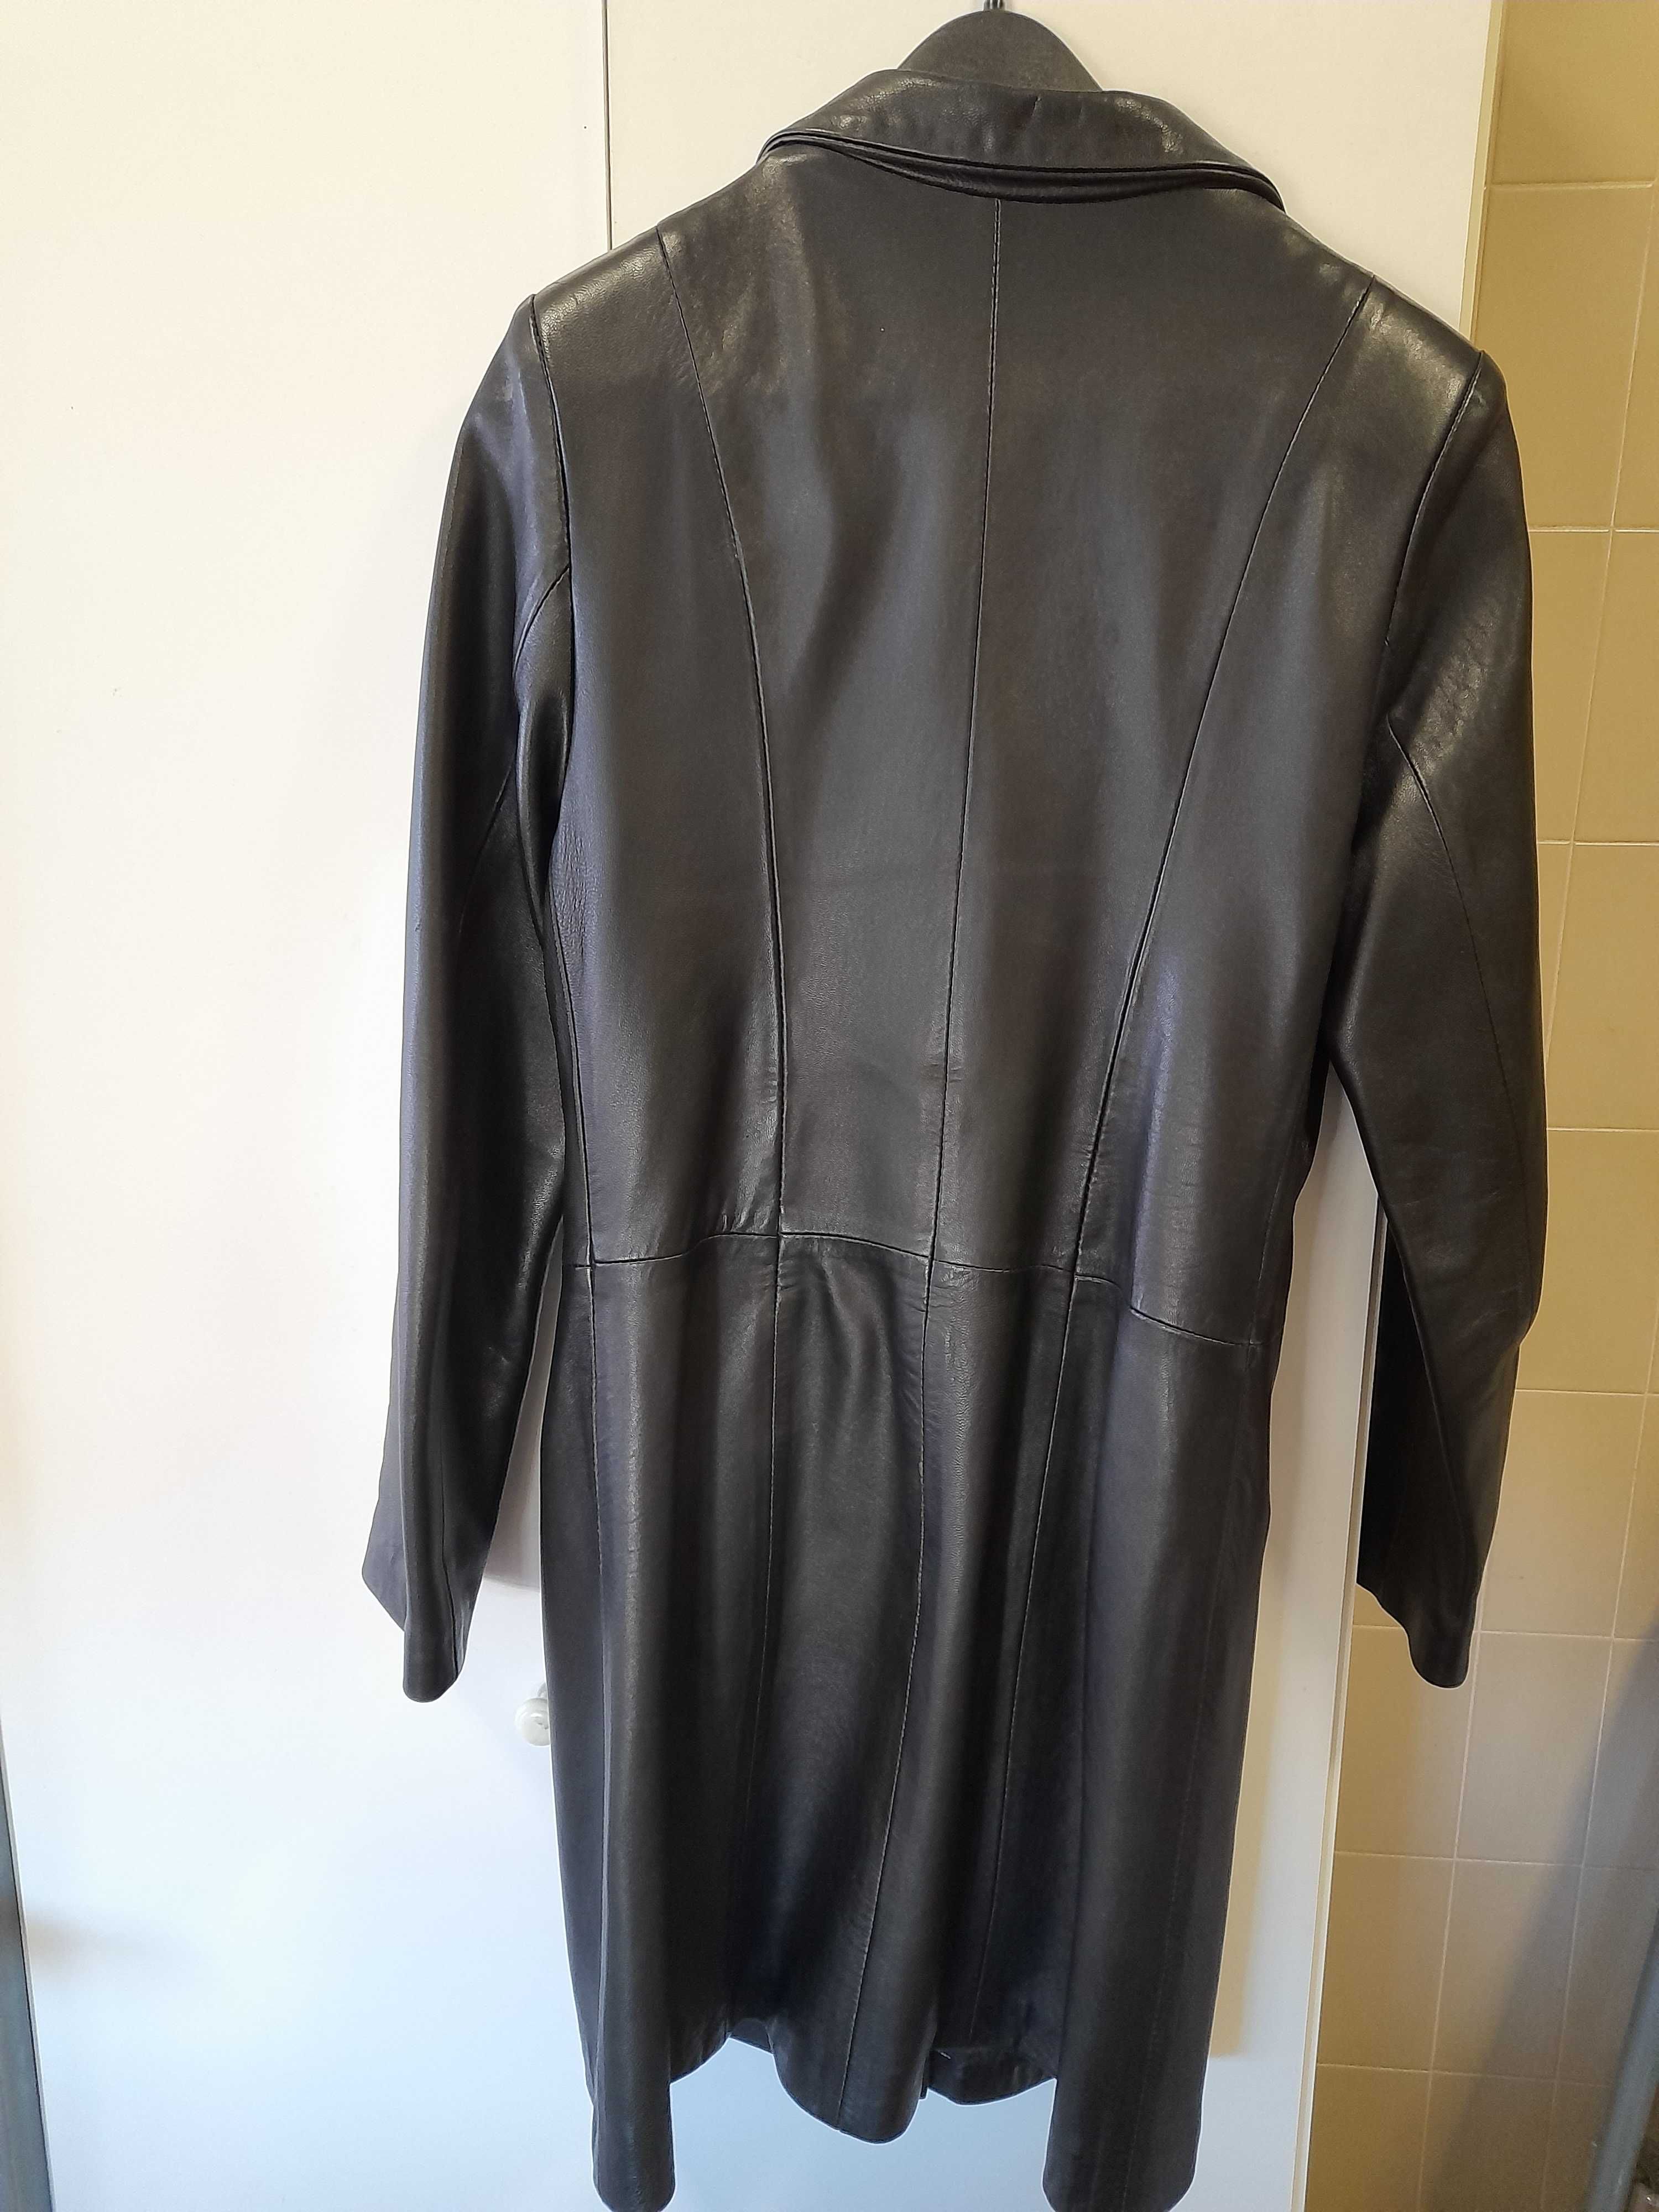 Blazer/casaco comprido em pele preta